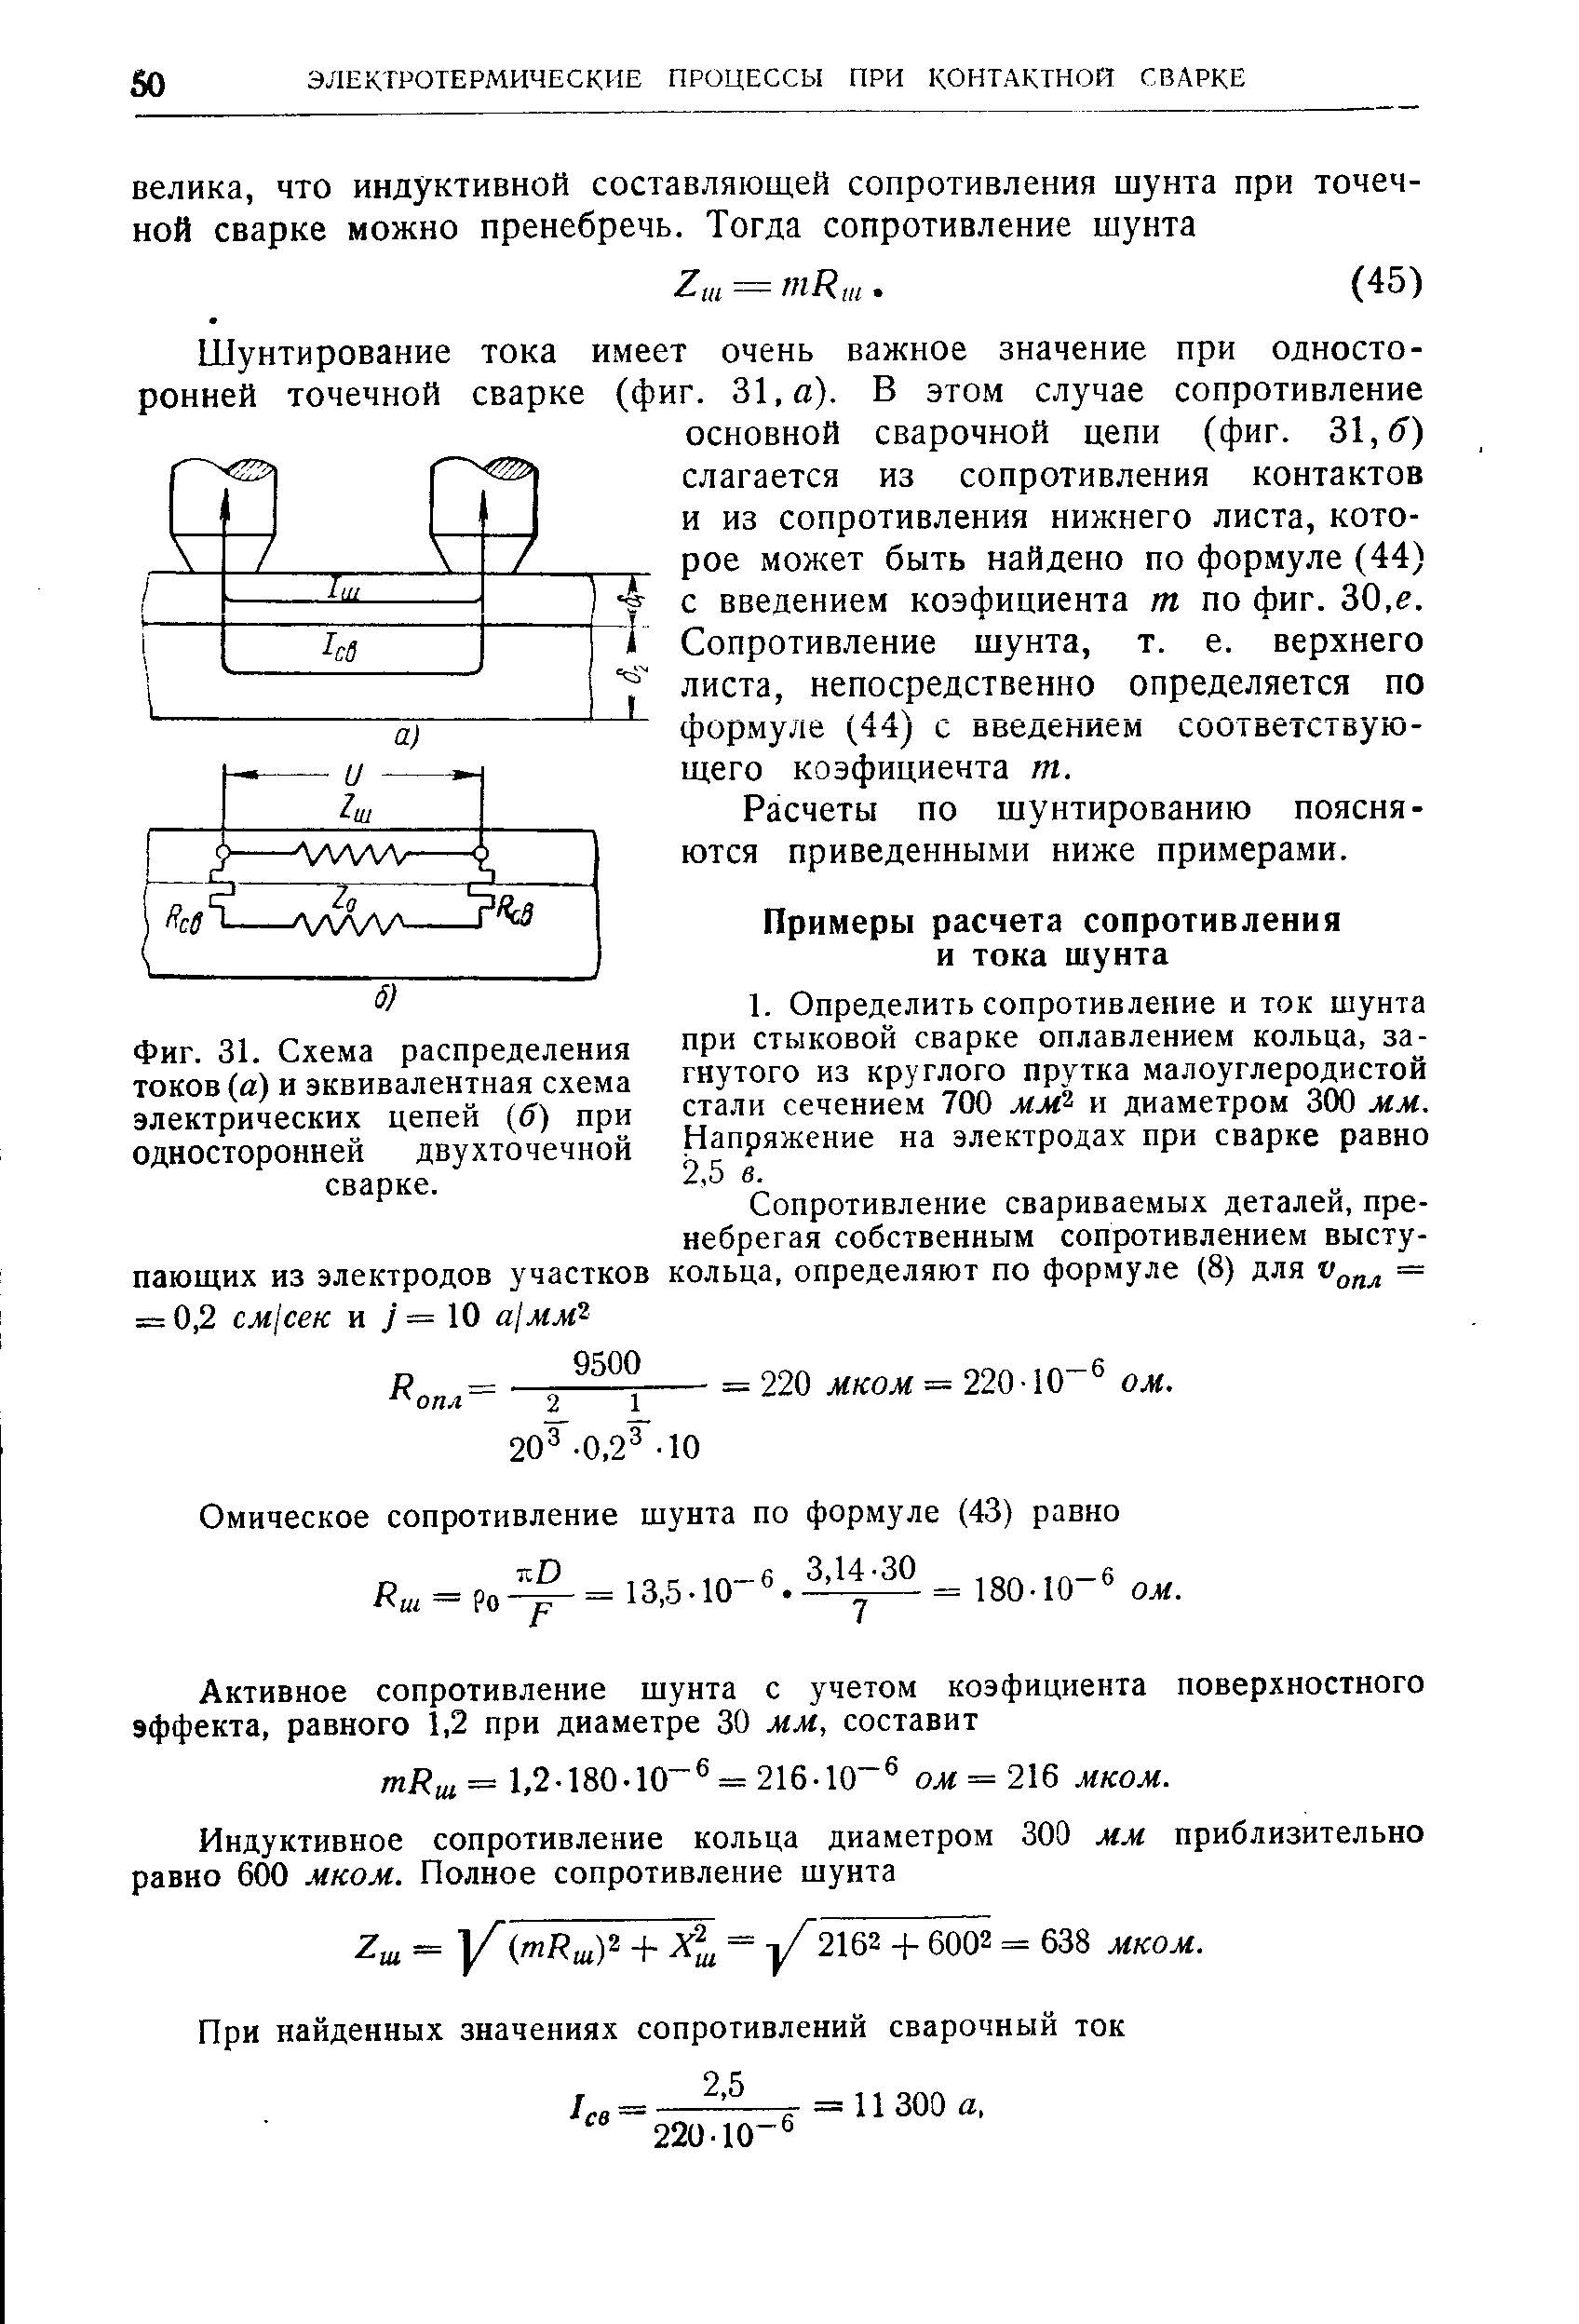 Фиг. 31. Схема распределения токов (а) и эквивалентная схема электрических цепей (< ) при односторонней двухточечной сварке.
